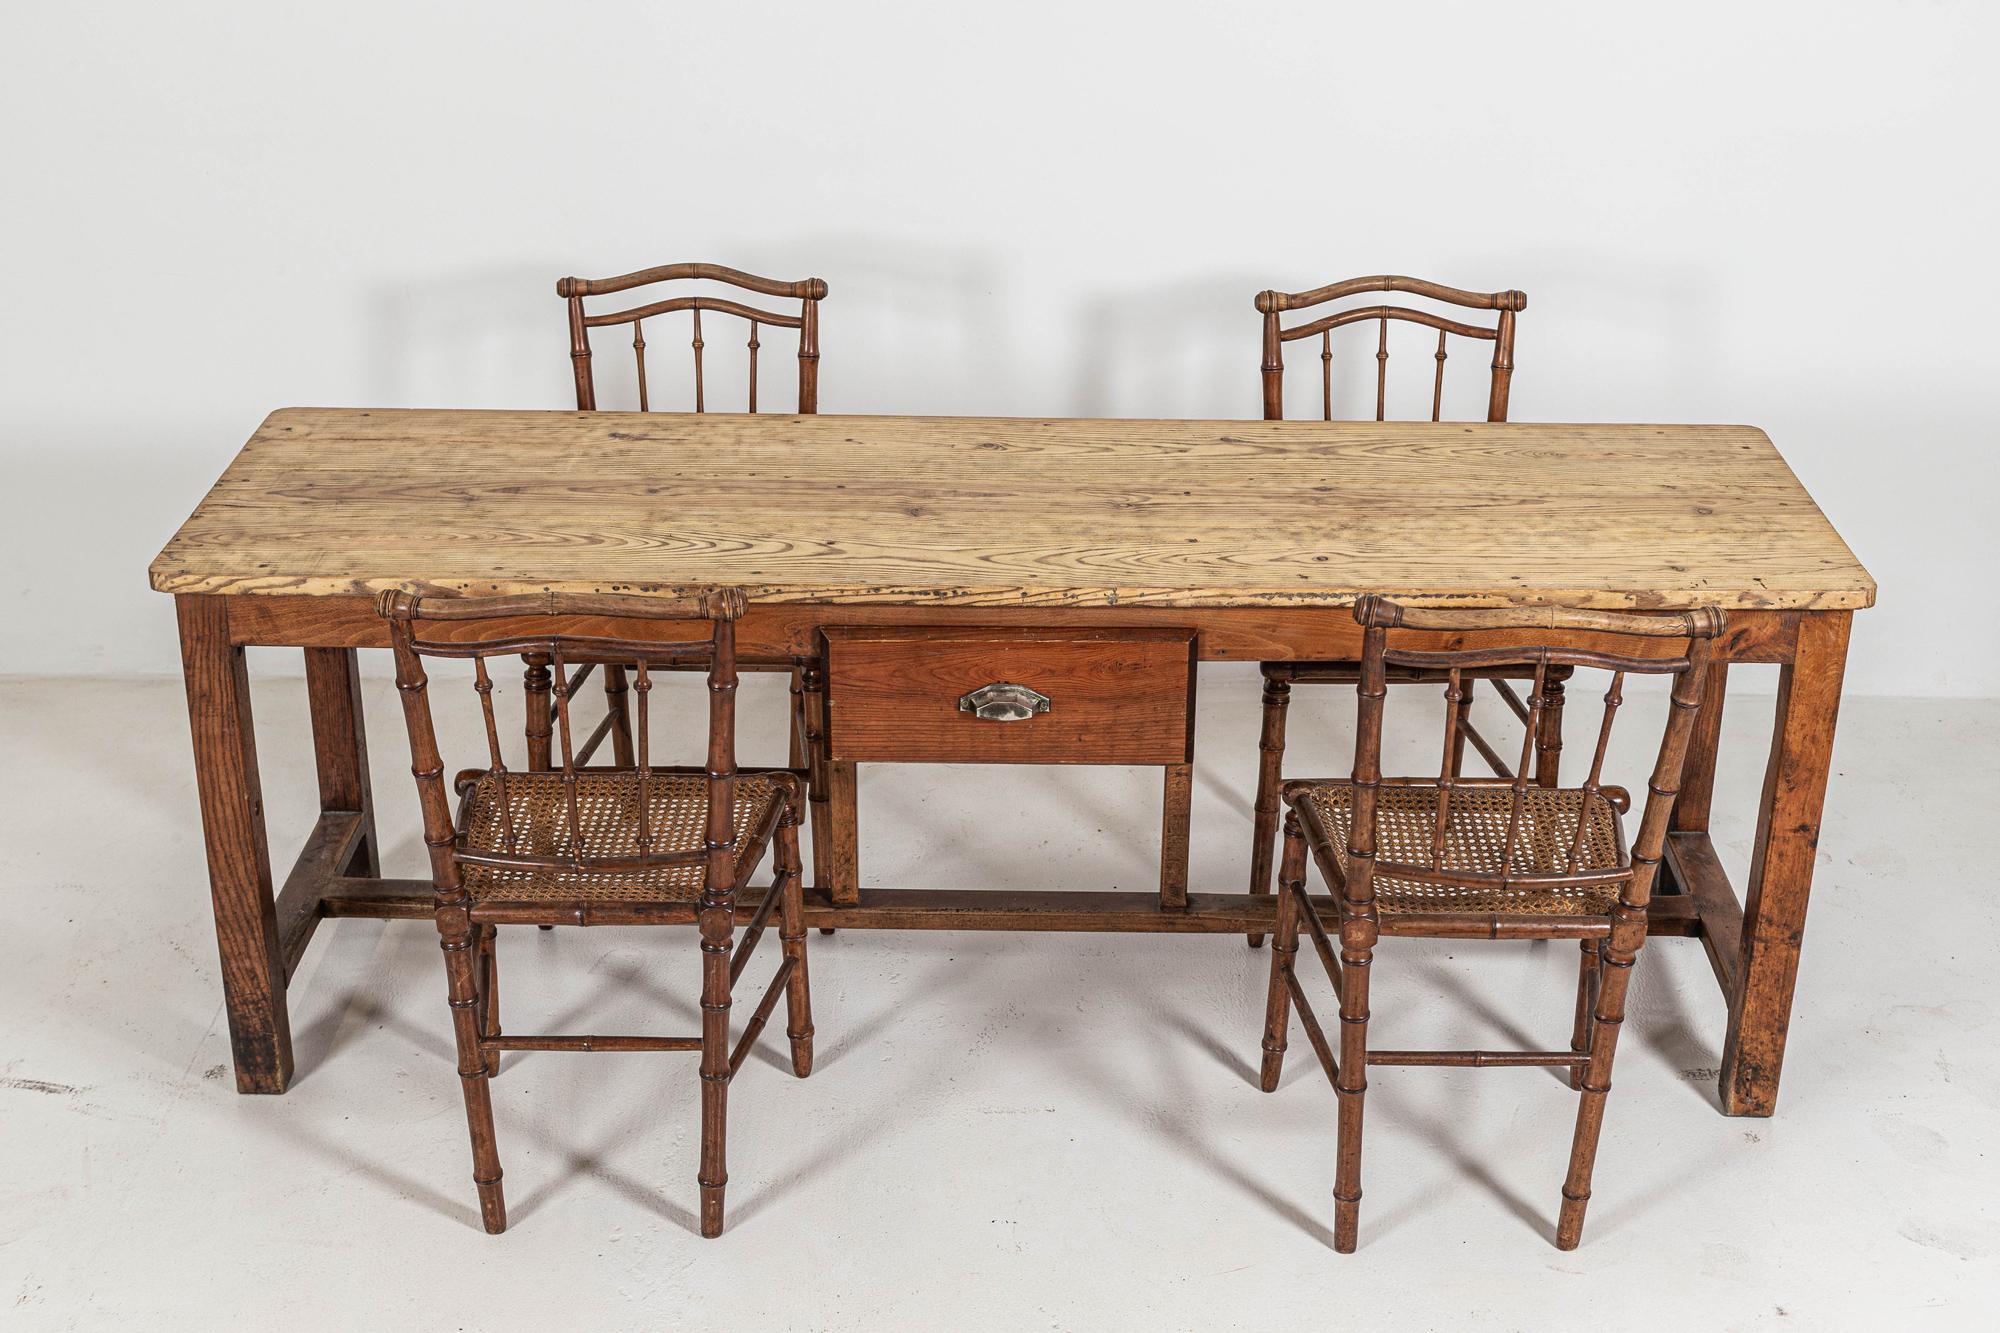 Um 1900.

19. Jahrhundert Französisch Obstholz drapiert Tisch

Kann als Küchentheke/Insel mit Rollen erhöht werden

Aus Südfrankreich stammend

  

Maße: B200 x T58 x H73 cm.